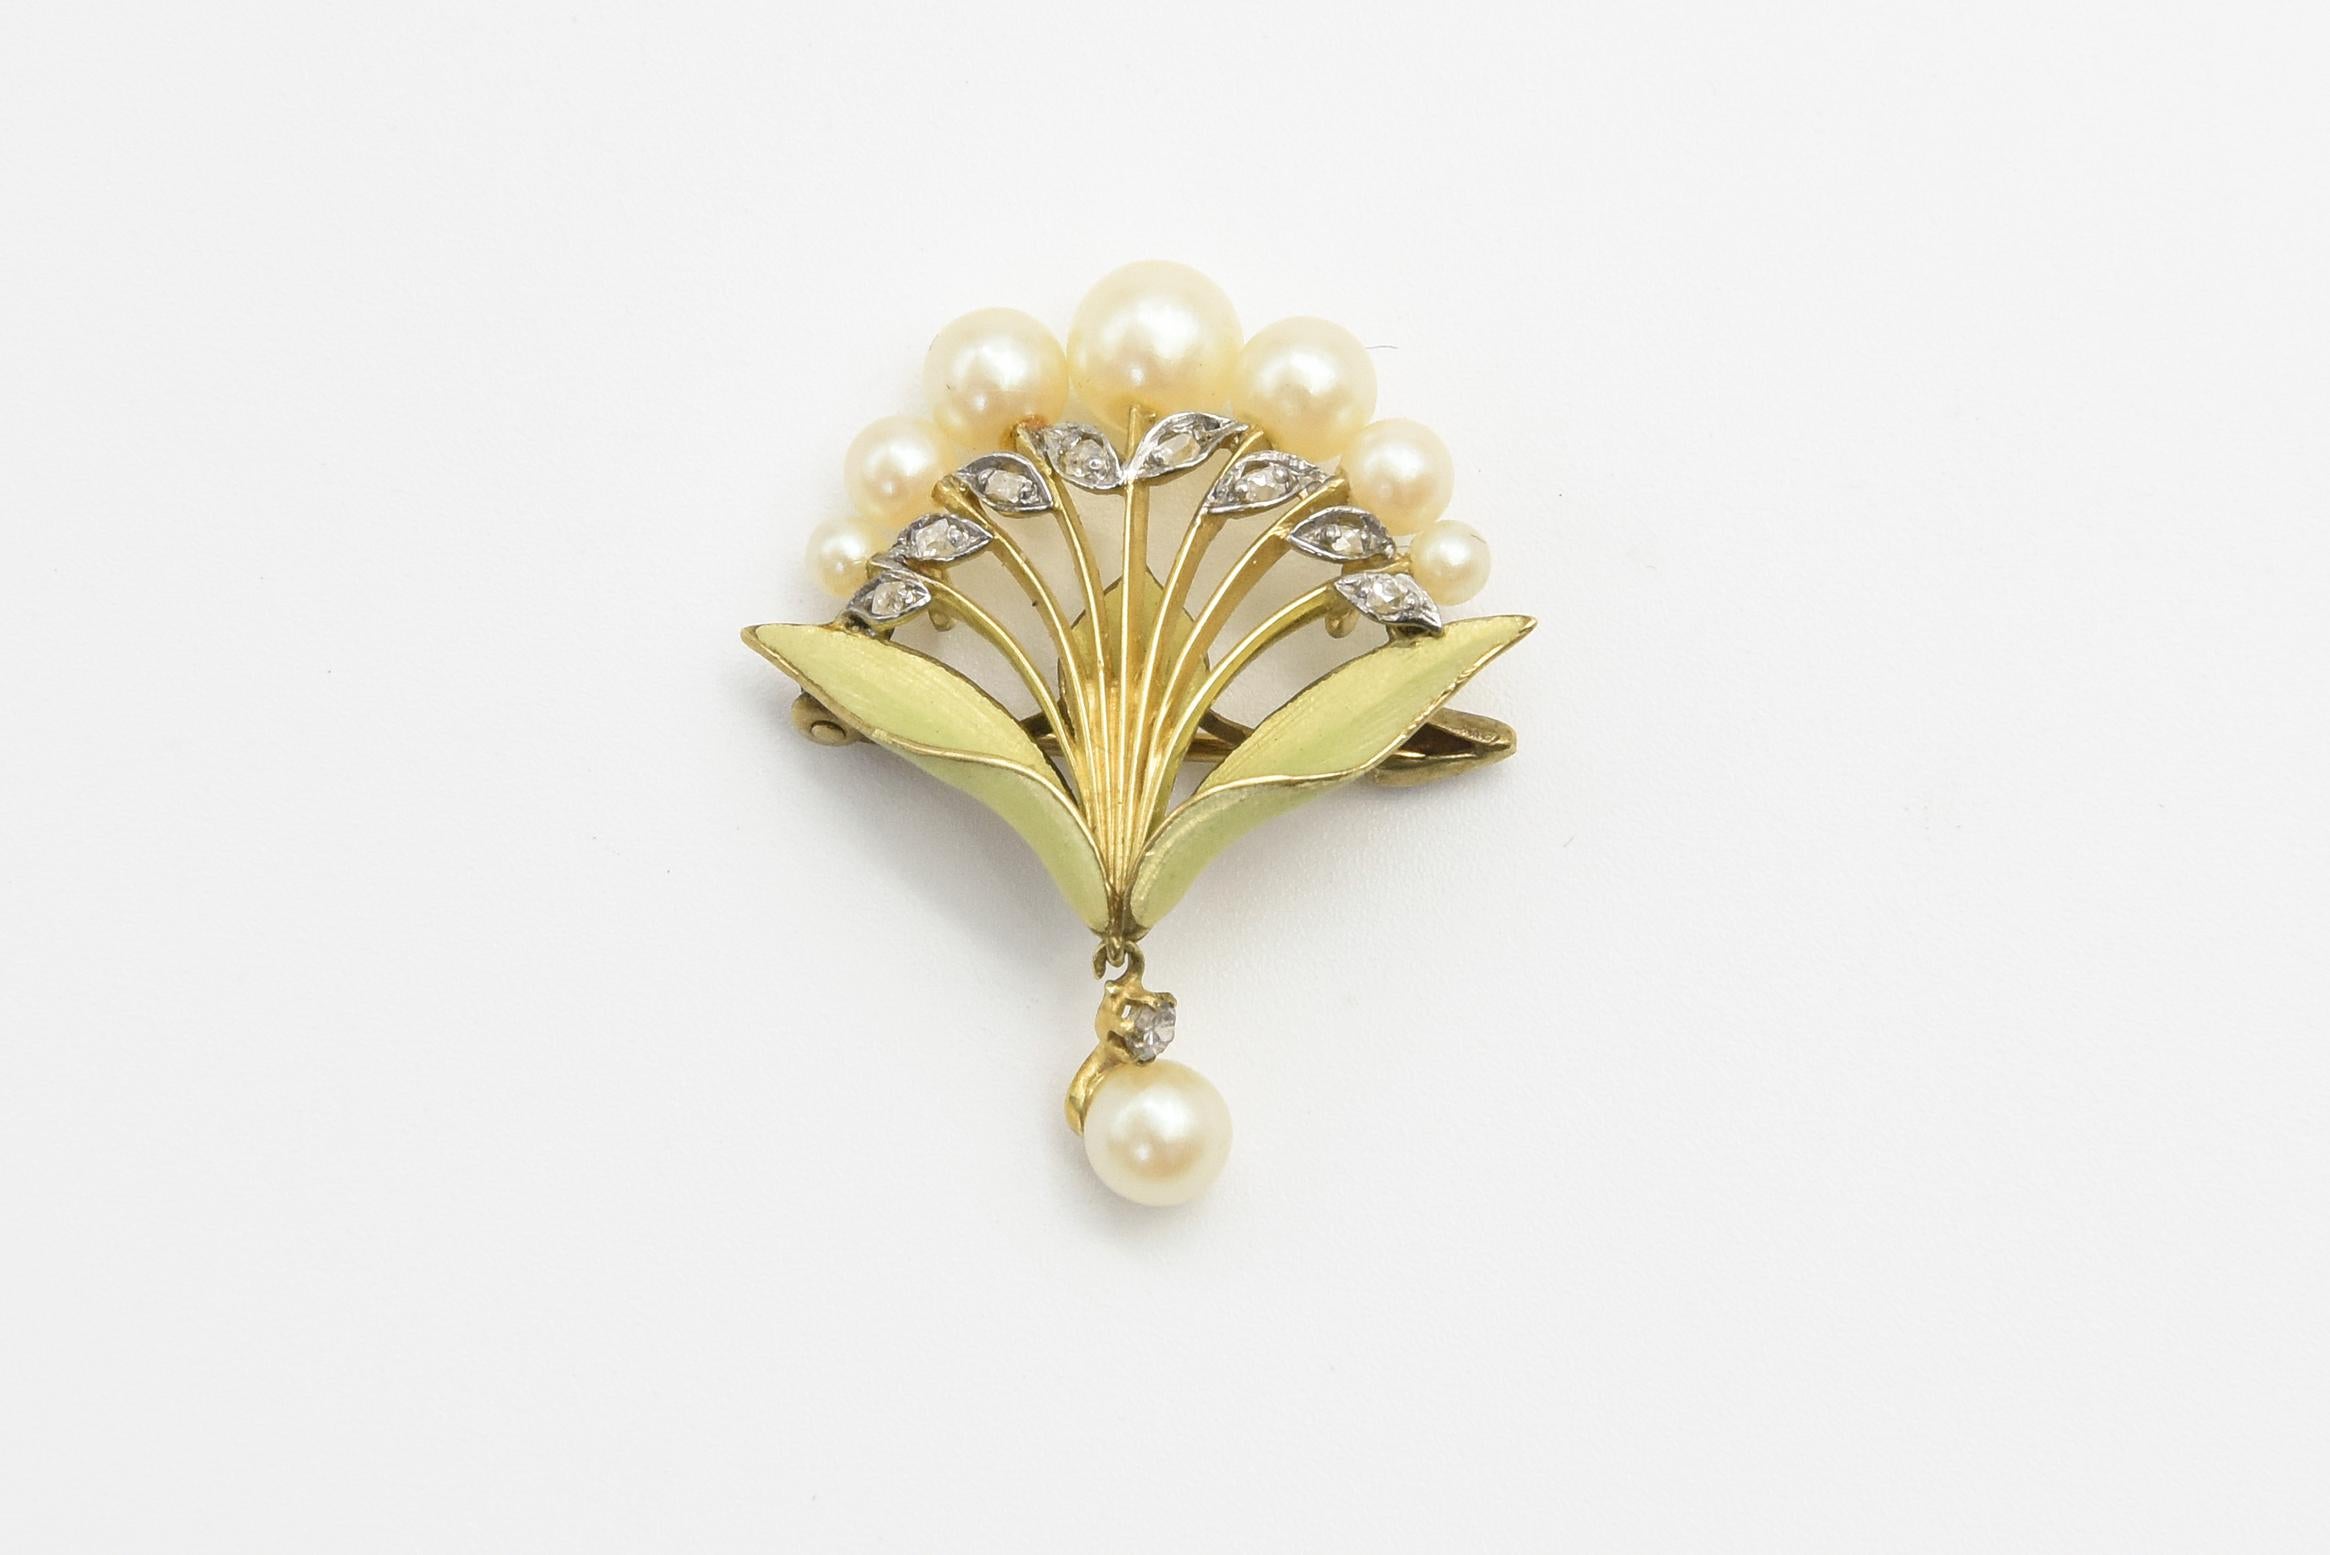 Superbe broche art nouveau en émail floral de style lys avec sept perles graduées sur des tiges en diamant et en or jaune 18 carats.  La broche comporte deux feuilles en émail vert qui se terminent par un pendentif en diamant et en perle.    Le dos